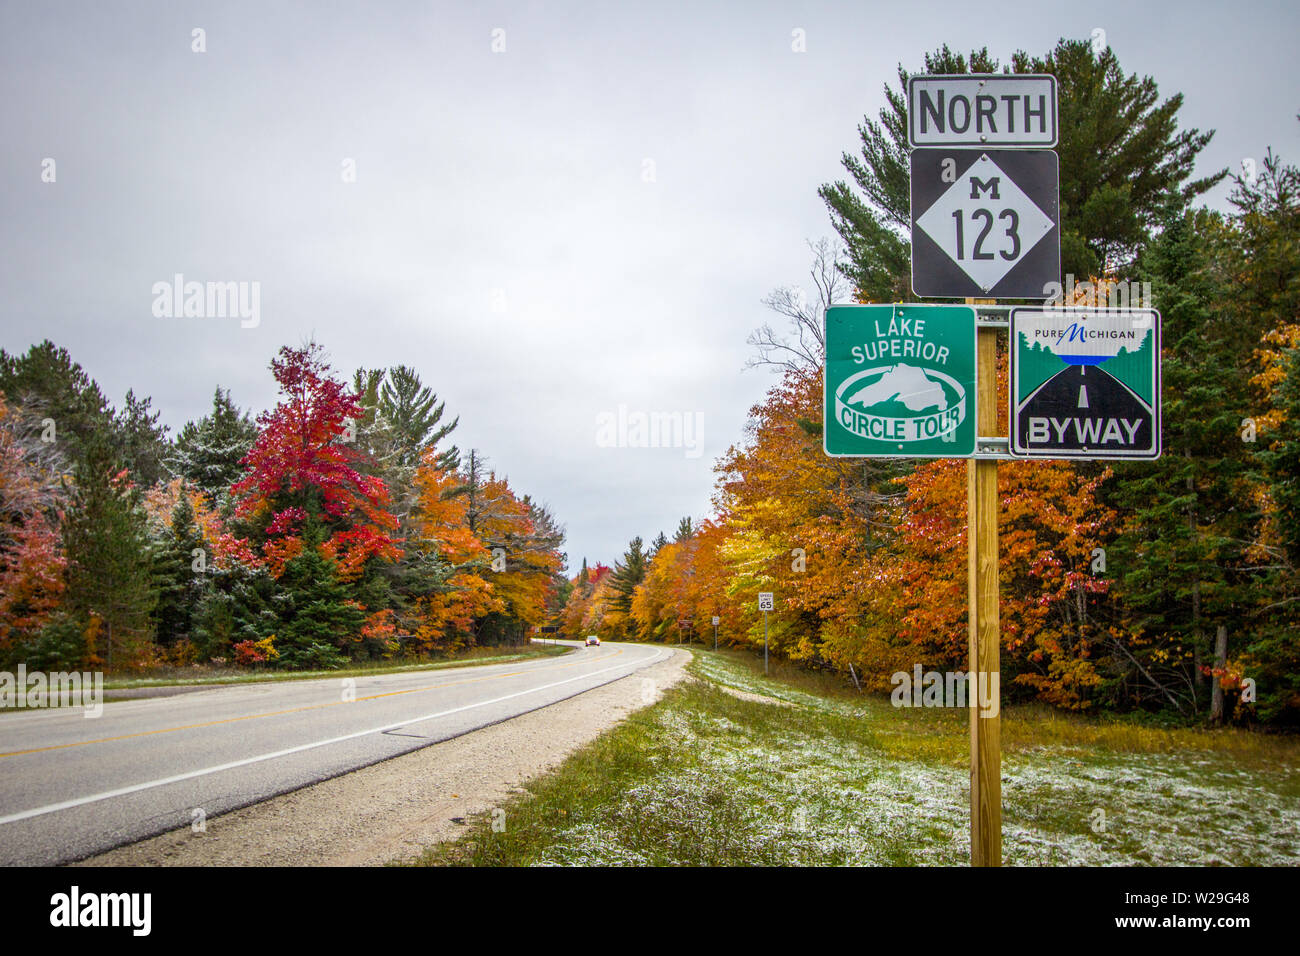 Paradis, Michigan, USA - 13 octobre 2018 : Michigan Scenic Byway avec le lac Supérieur scenic circle tour signe sur une autoroute à deux voies, Michigan rural. Banque D'Images